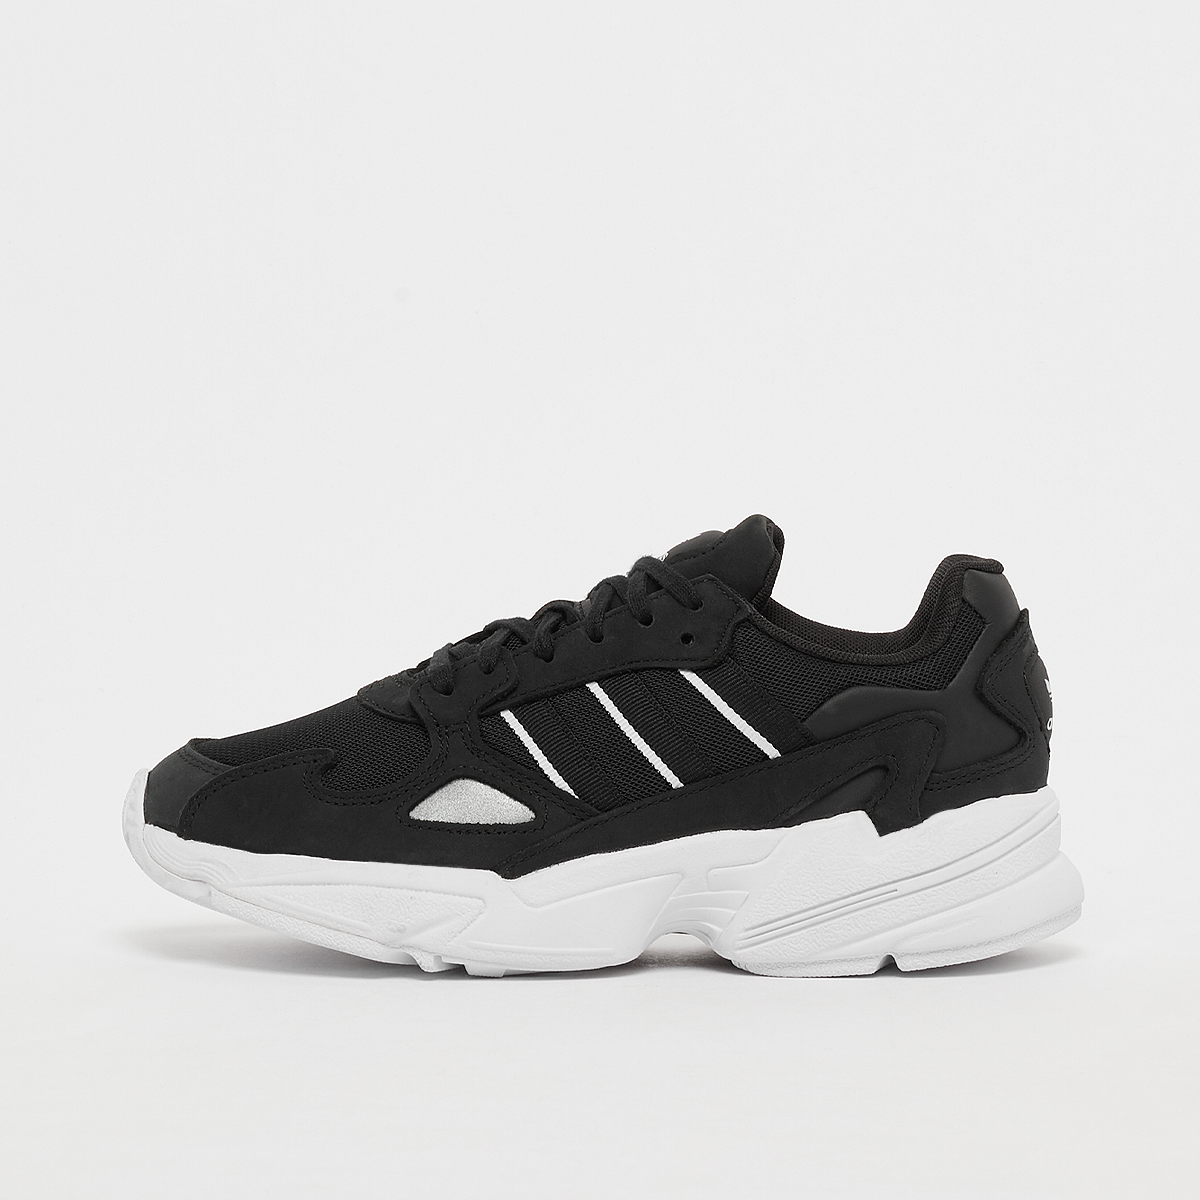 Sneaker Falcon, adidas Originals, Footwear, core black/core black/ftwr white, taille: 36 2/3